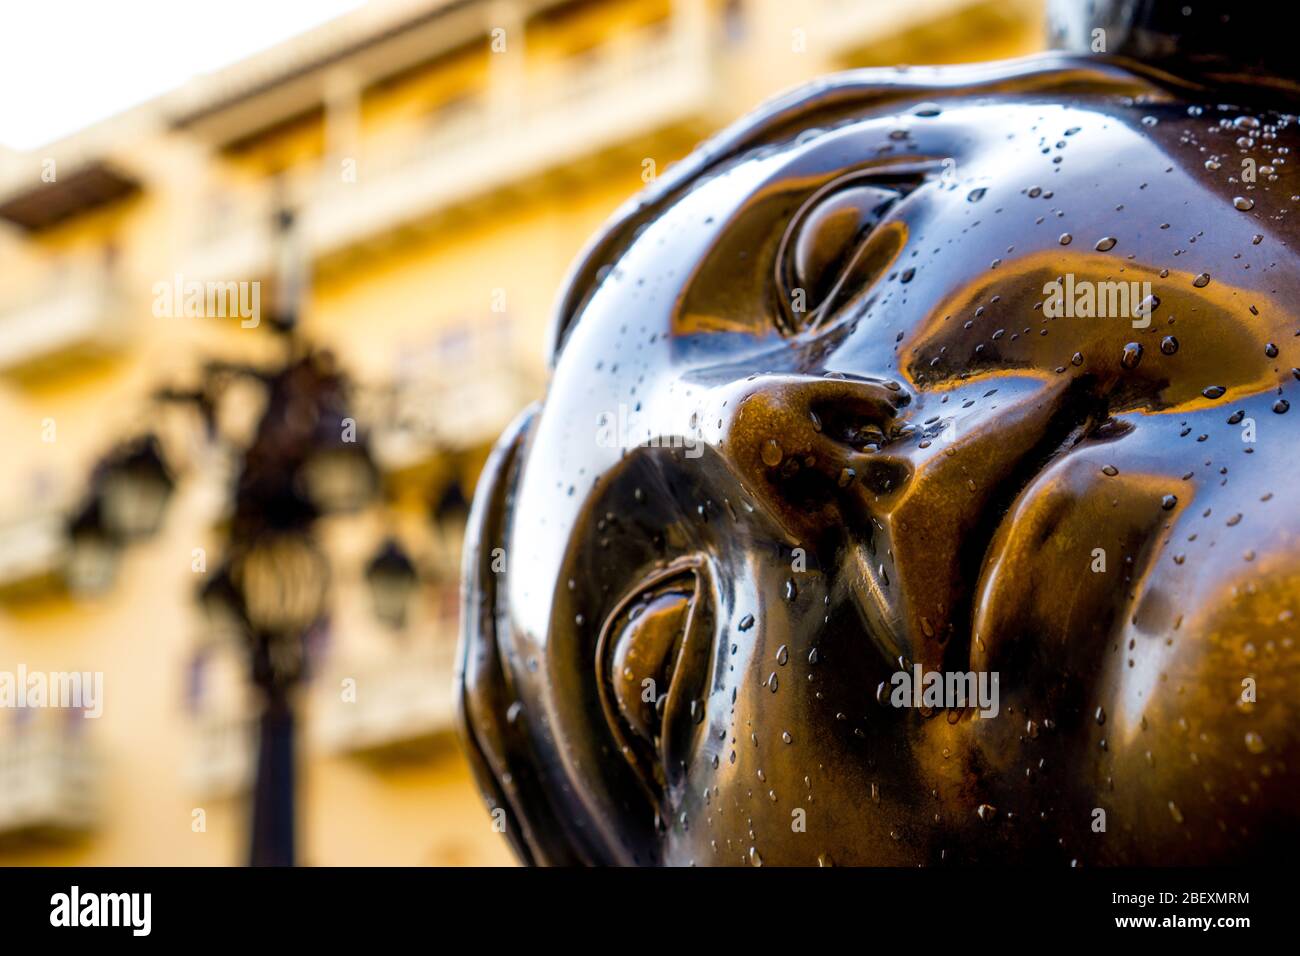 Faccia con gocce, scultura dell'artista colombiano fernando botero di fronte alla piazza santo domingo a cartagena colombia Foto Stock